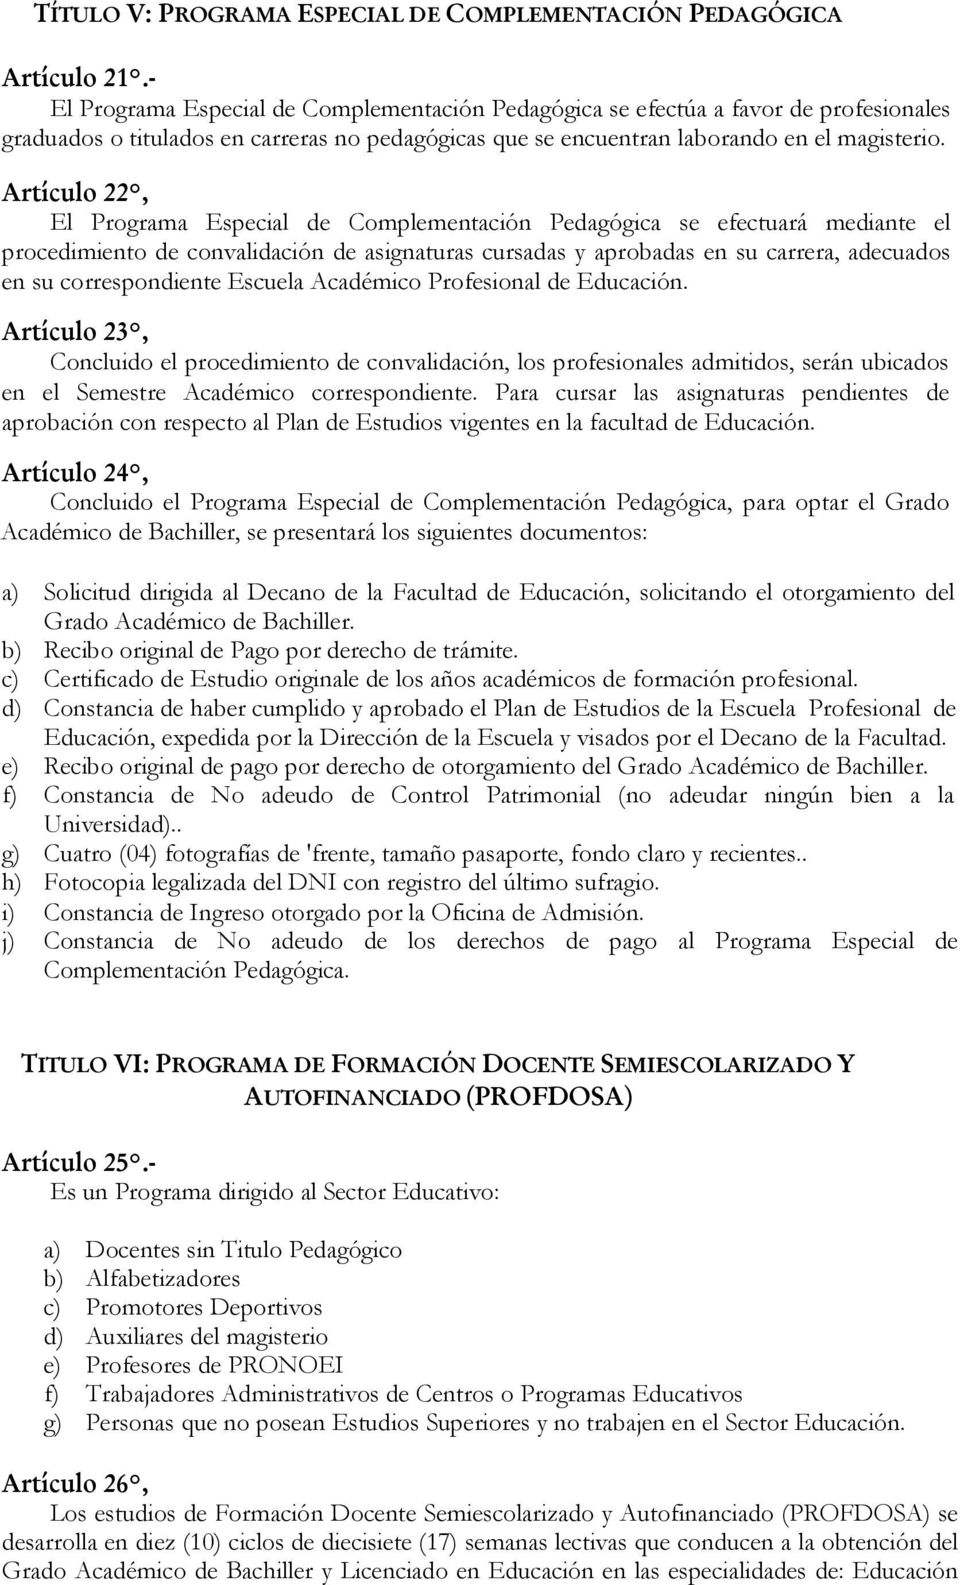 Artículo 22, El Programa Especial de Complementación Pedagógica se efectuará mediante el procedimiento de convalidación de asignaturas cursadas y aprobadas en su carrera, adecuados en su